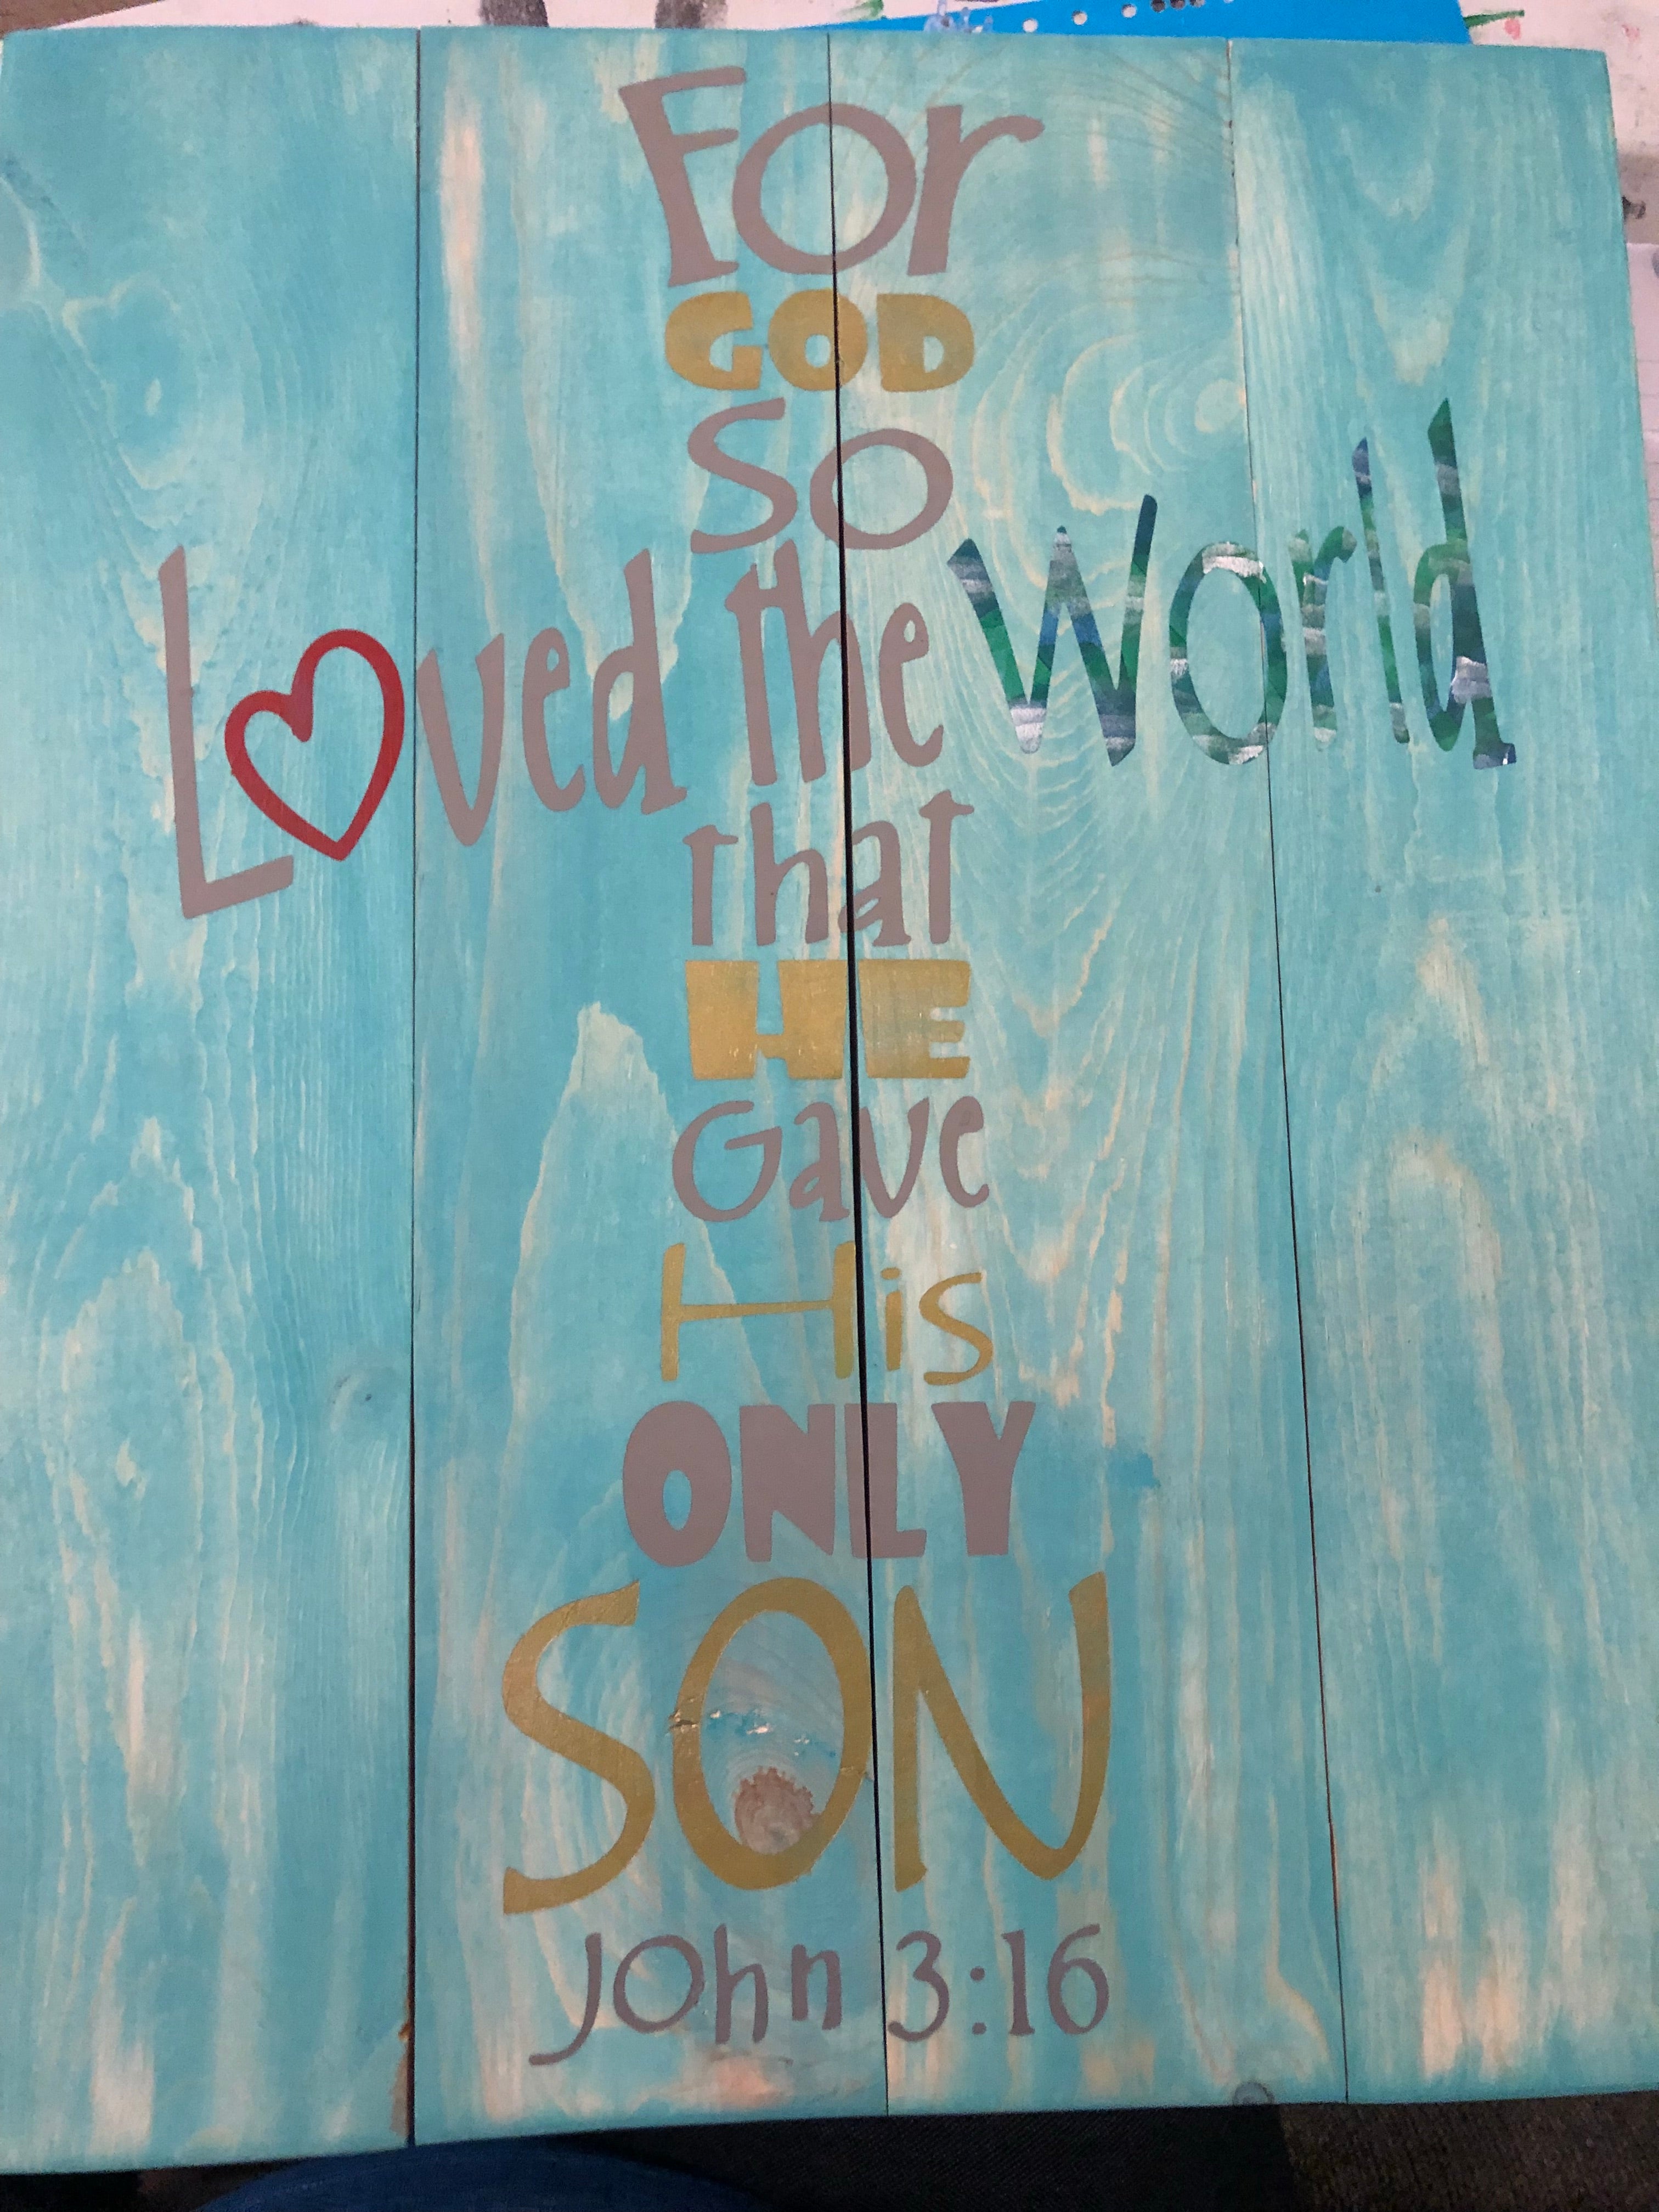 For god so loved the world-cross